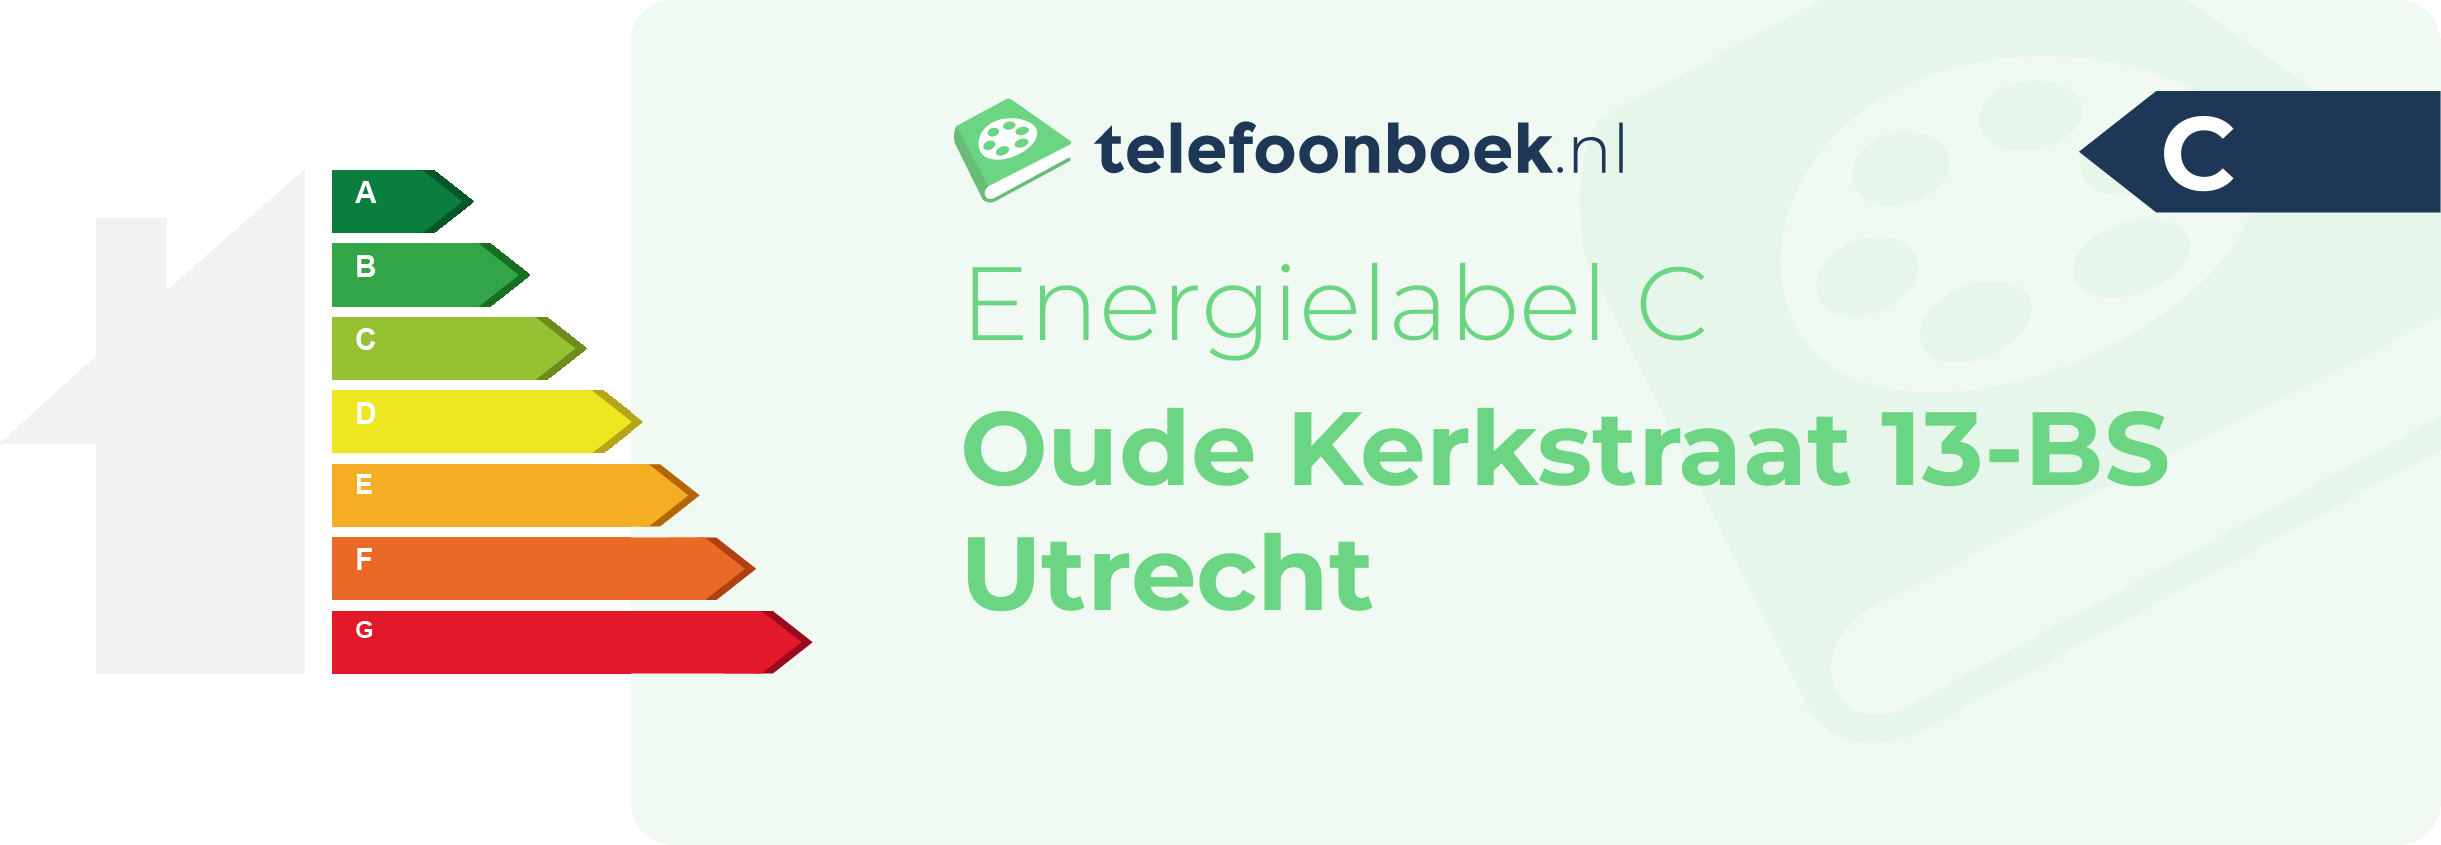 Energielabel Oude Kerkstraat 13-BS Utrecht